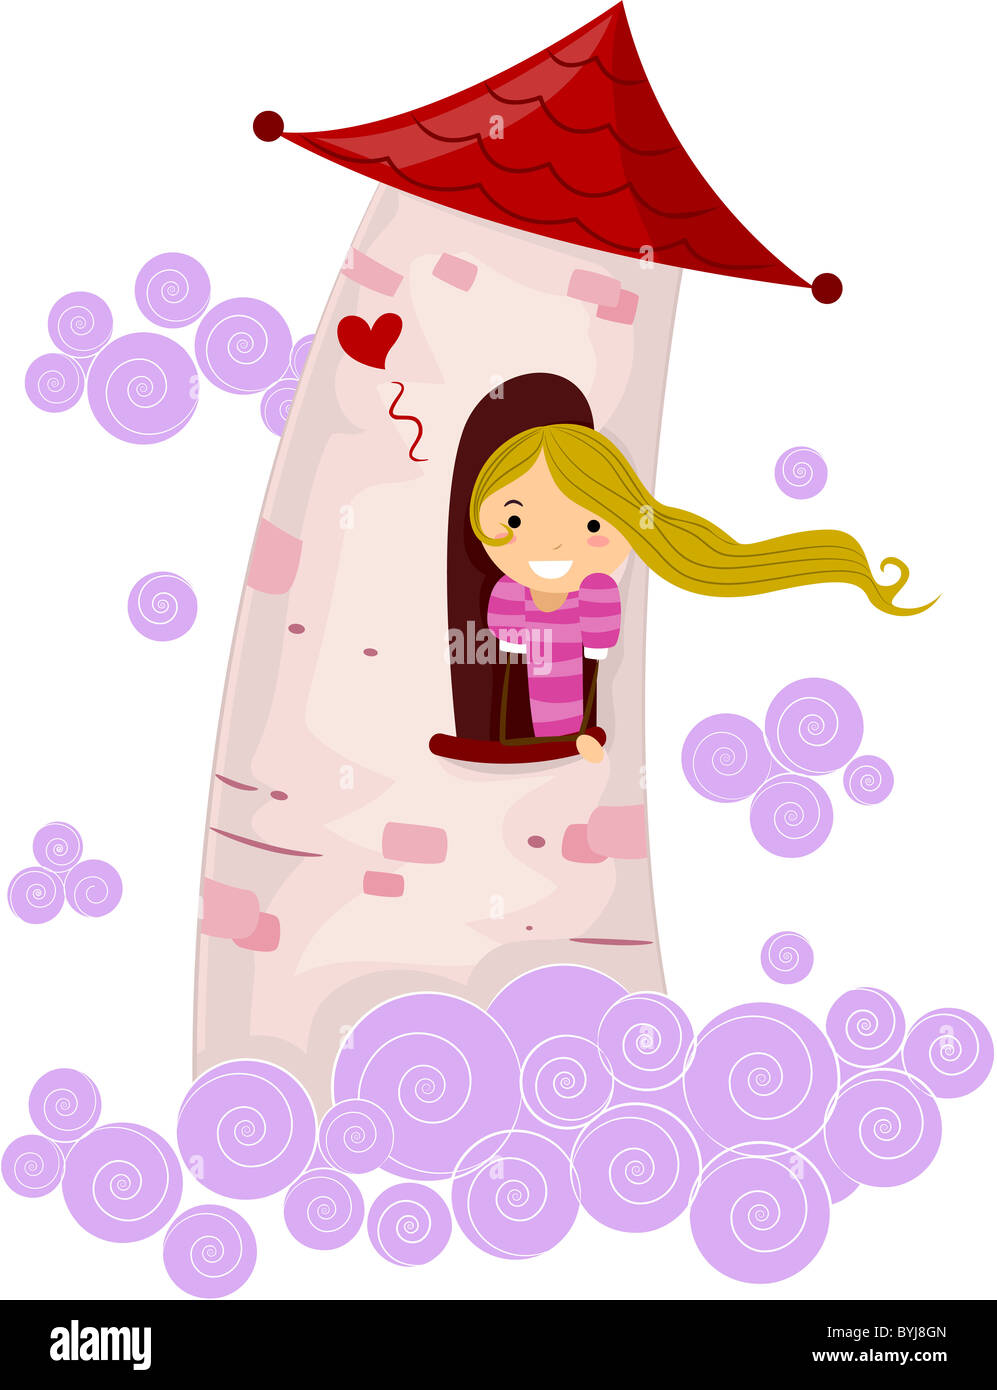 Abbildung von einem Stick Figur Princess stecken in einem Turm Stockfoto